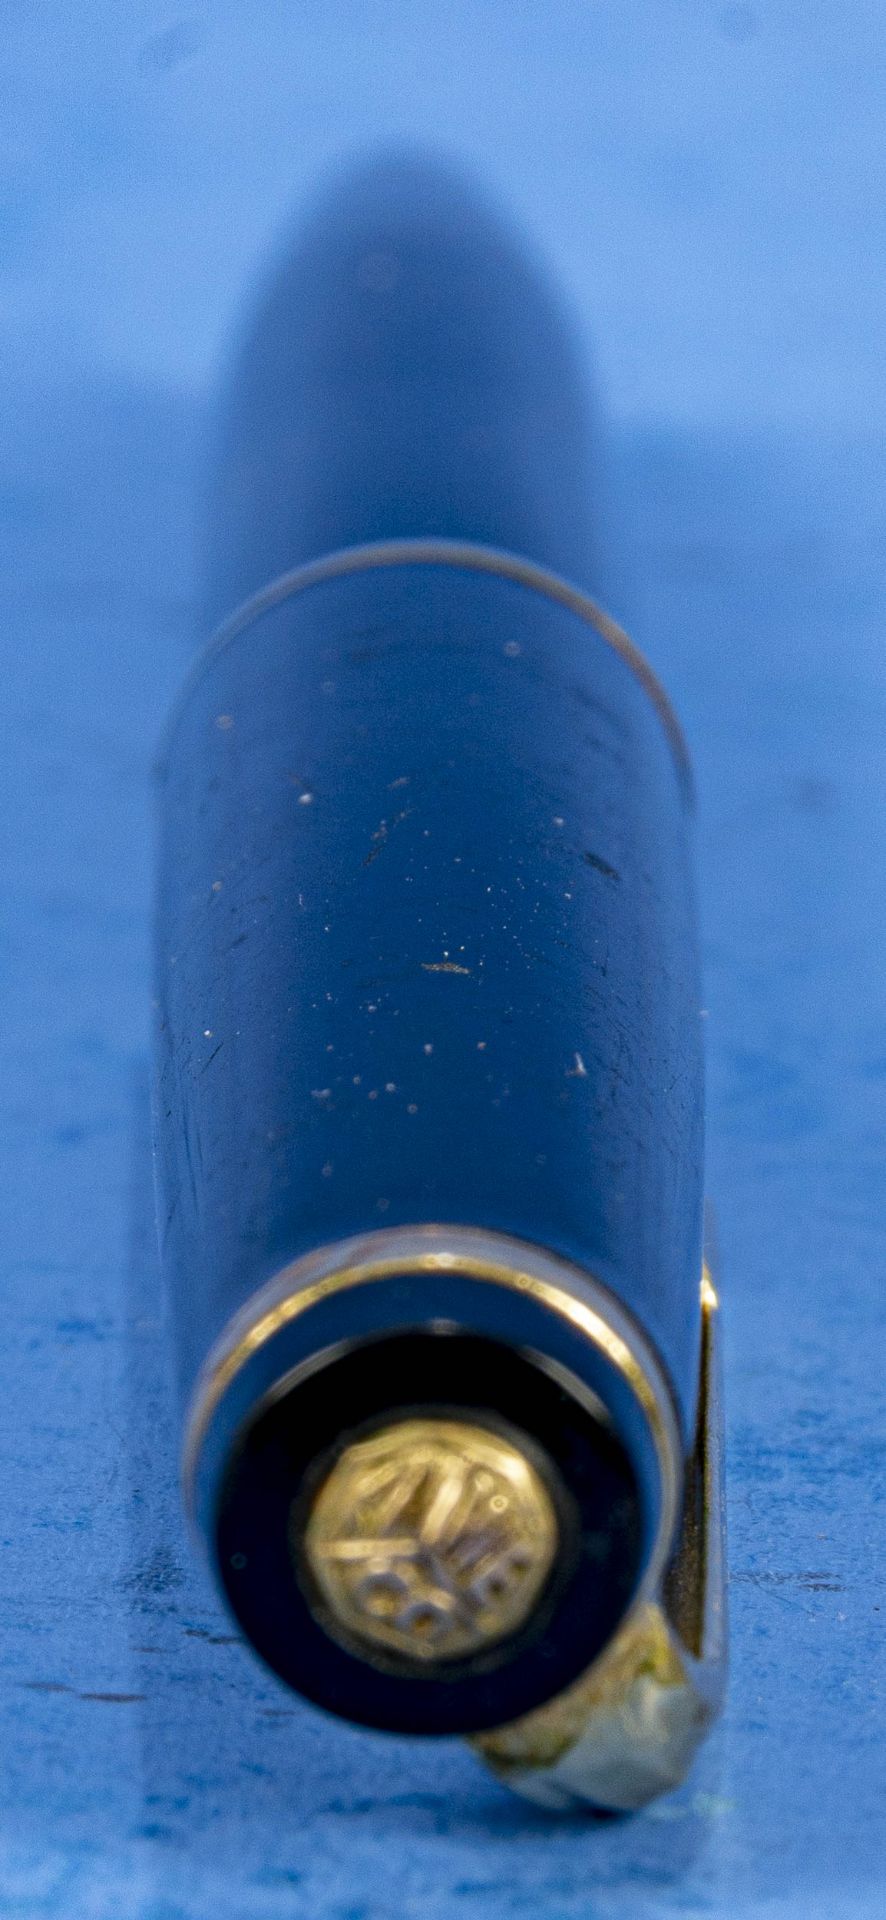 "KAWECO" Füllfederhalter, Modellno." V11- OM", stärkere Gebrauchsspuren, Länge ca. 12,8 cm. - Bild 2 aus 4